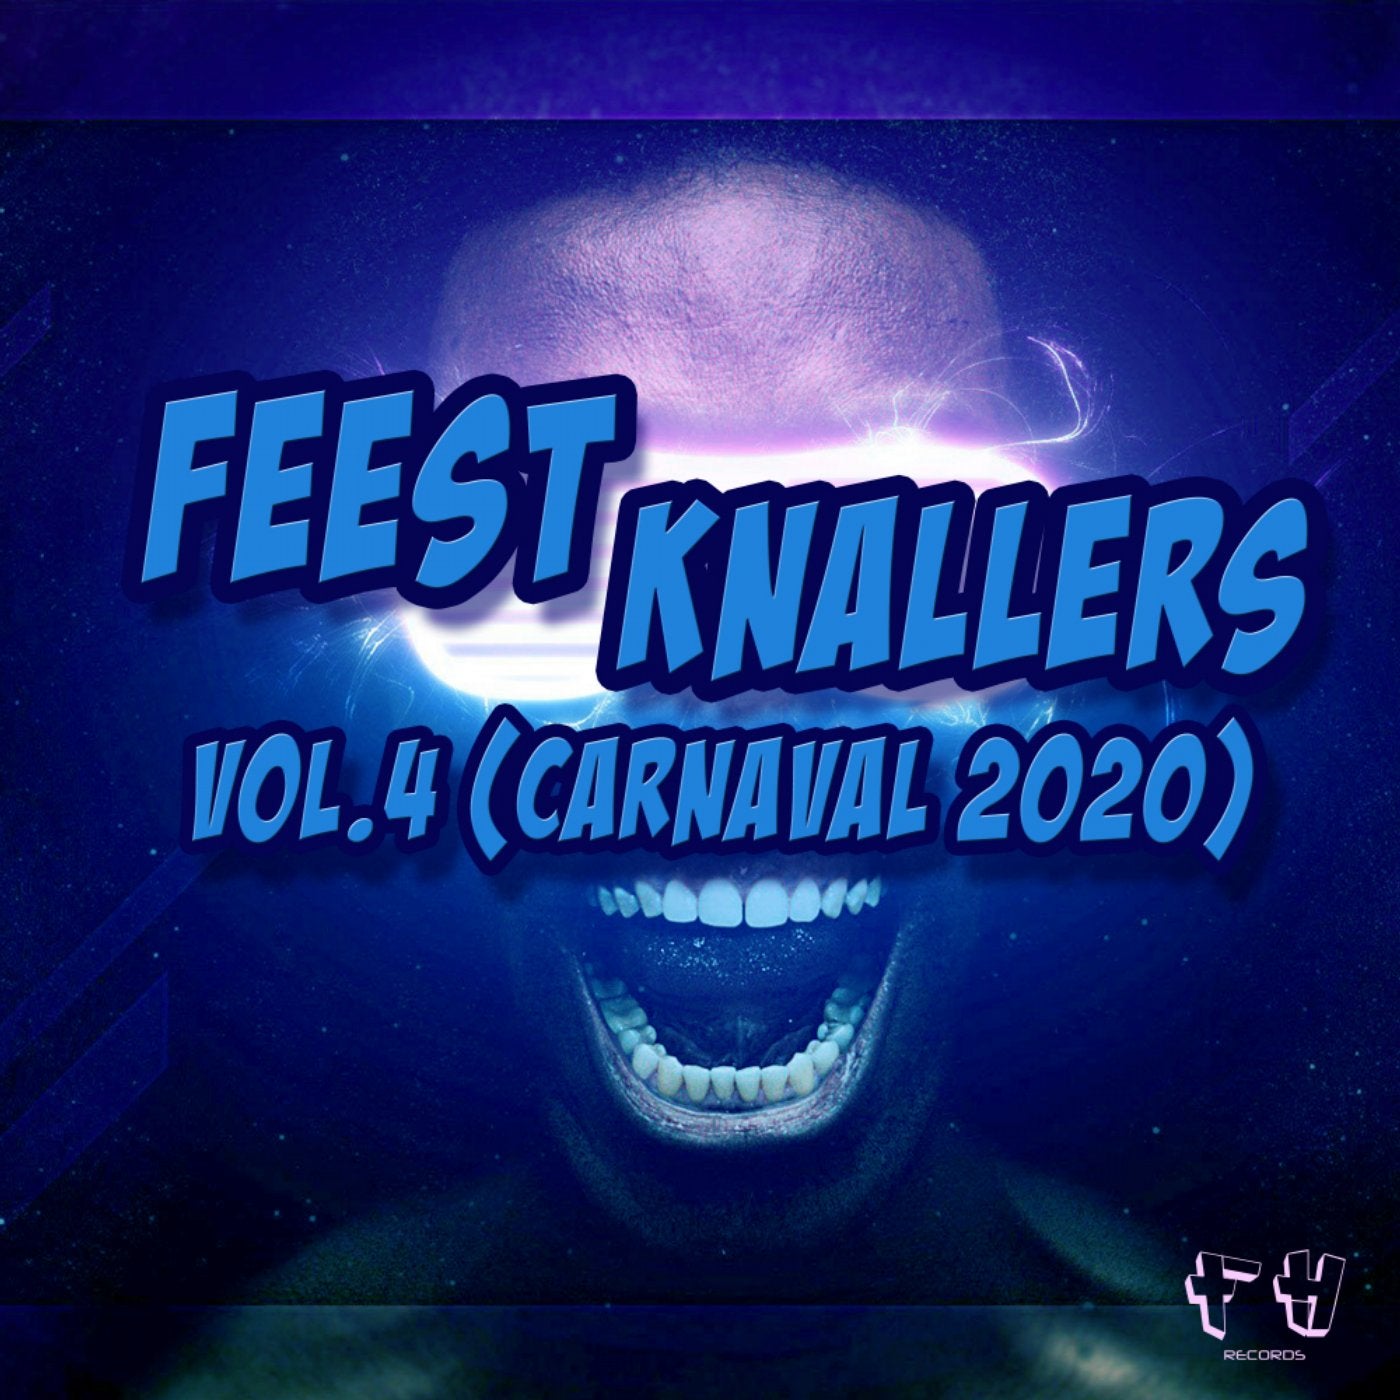 Feest Knallers, Vol. 4 (Carnaval 2020)